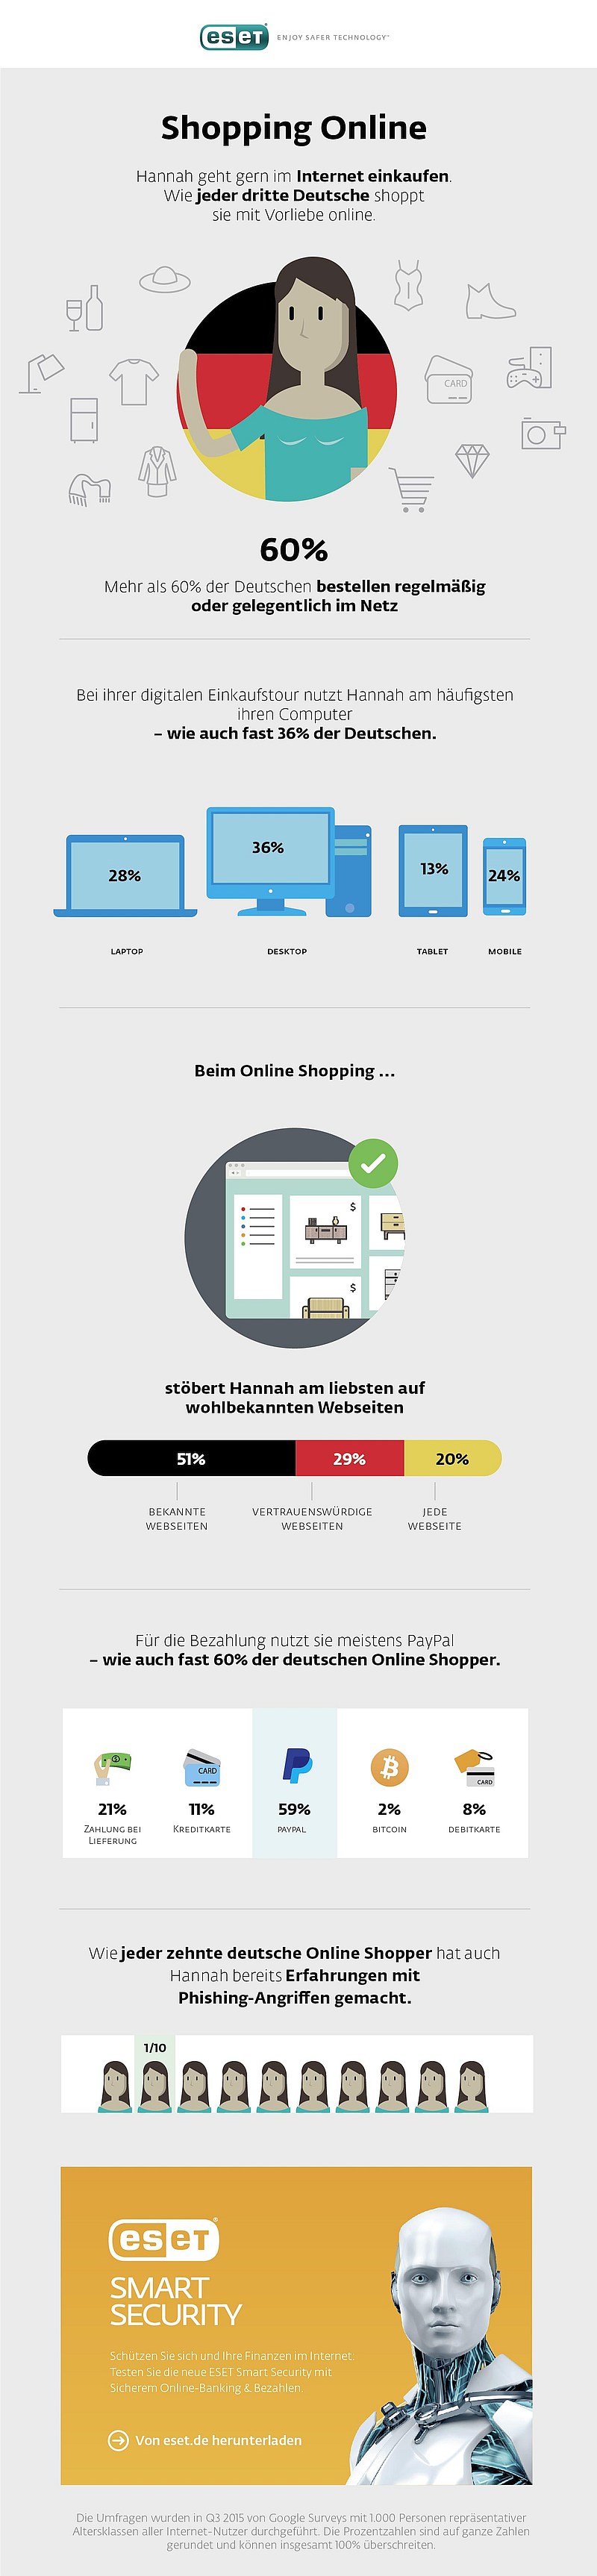 infografik eset online shopping verhalten